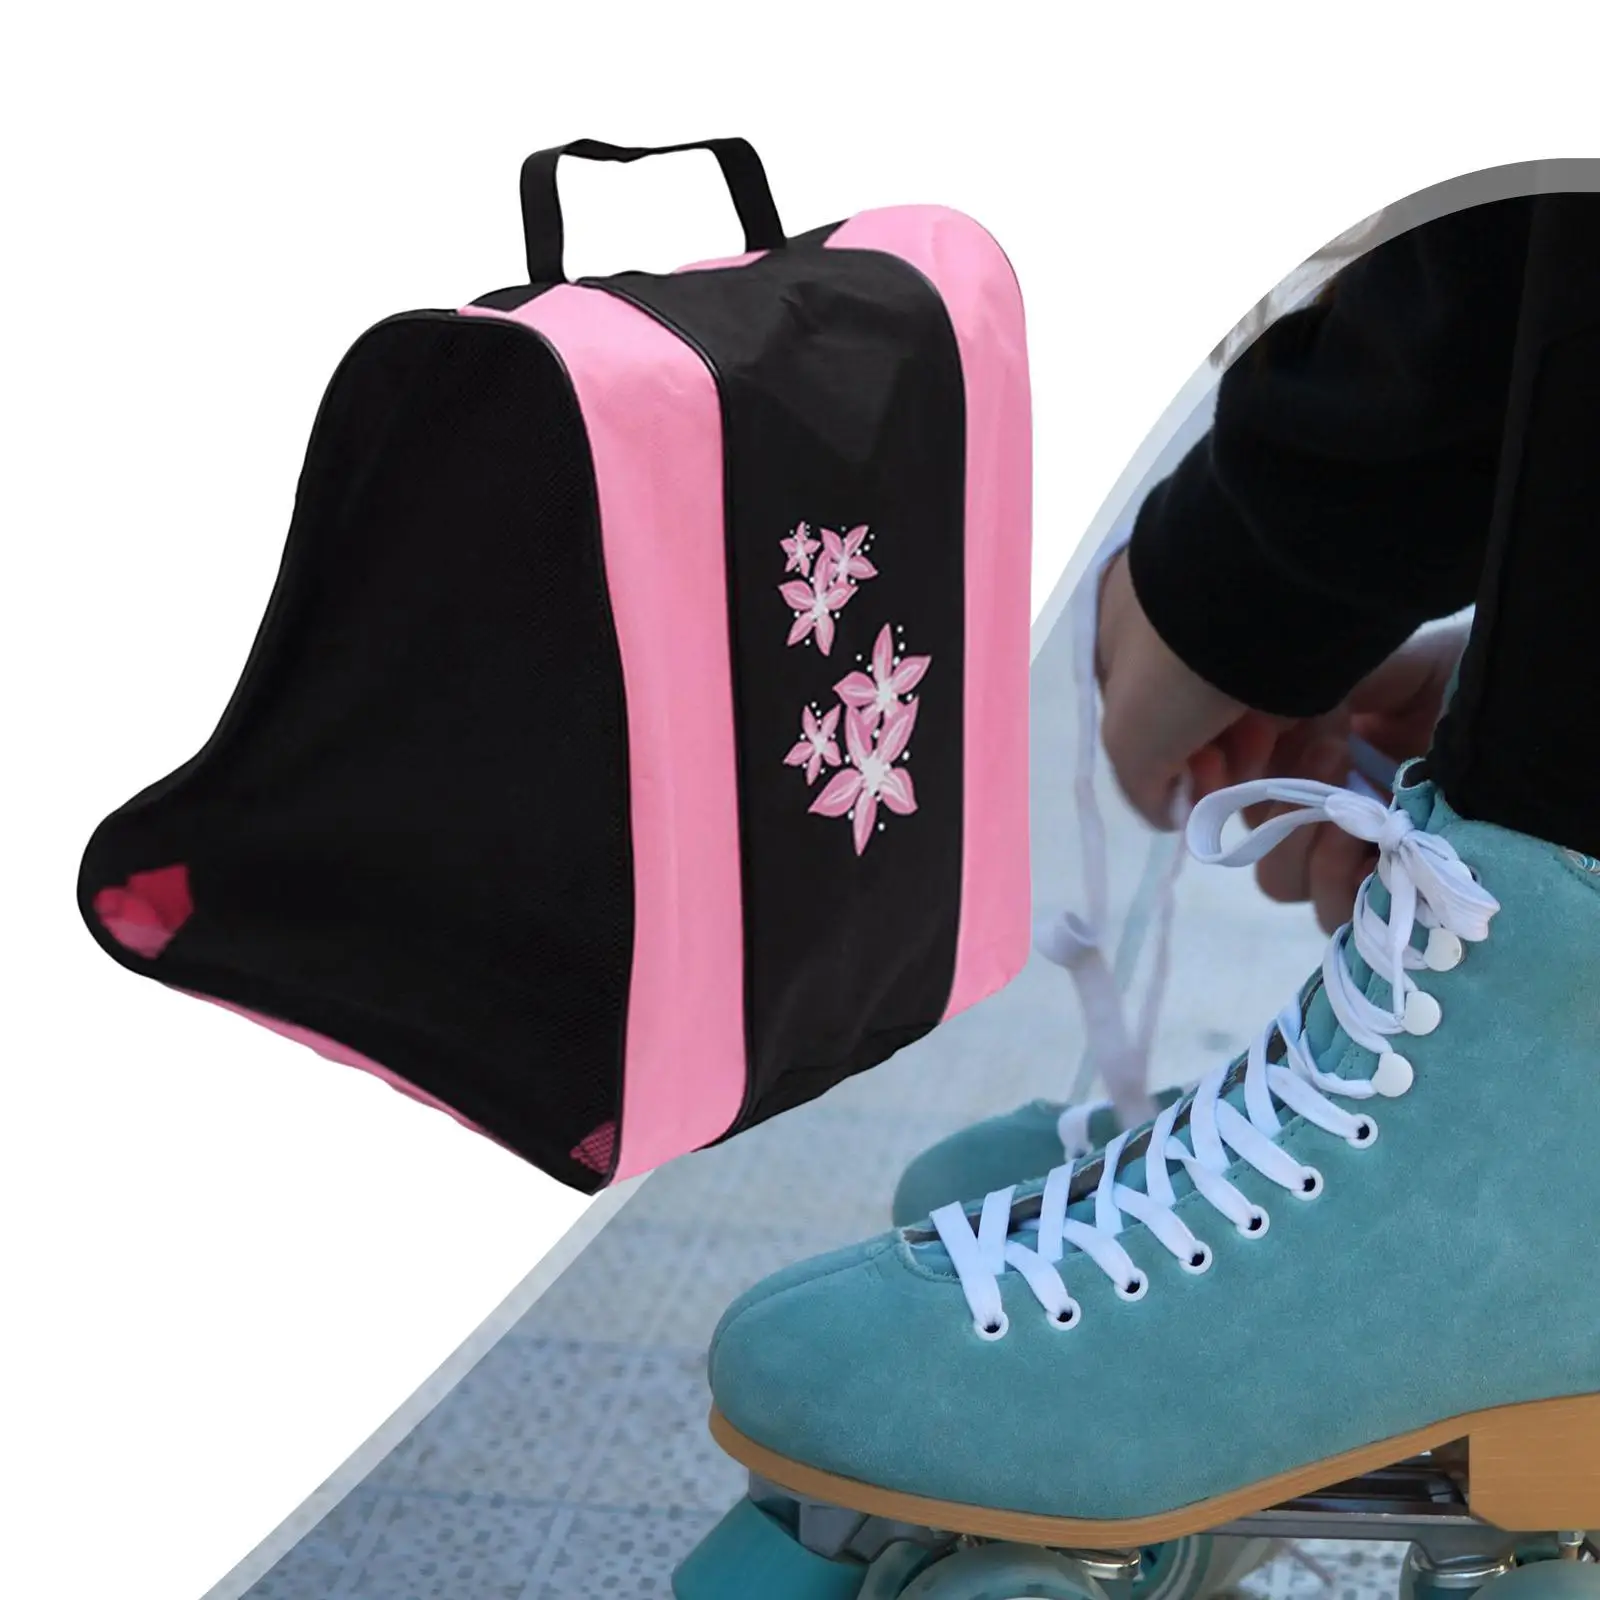 Portable Kids Roller Skate Bag 3Layers Breathable Adjustable Shoulder Strap